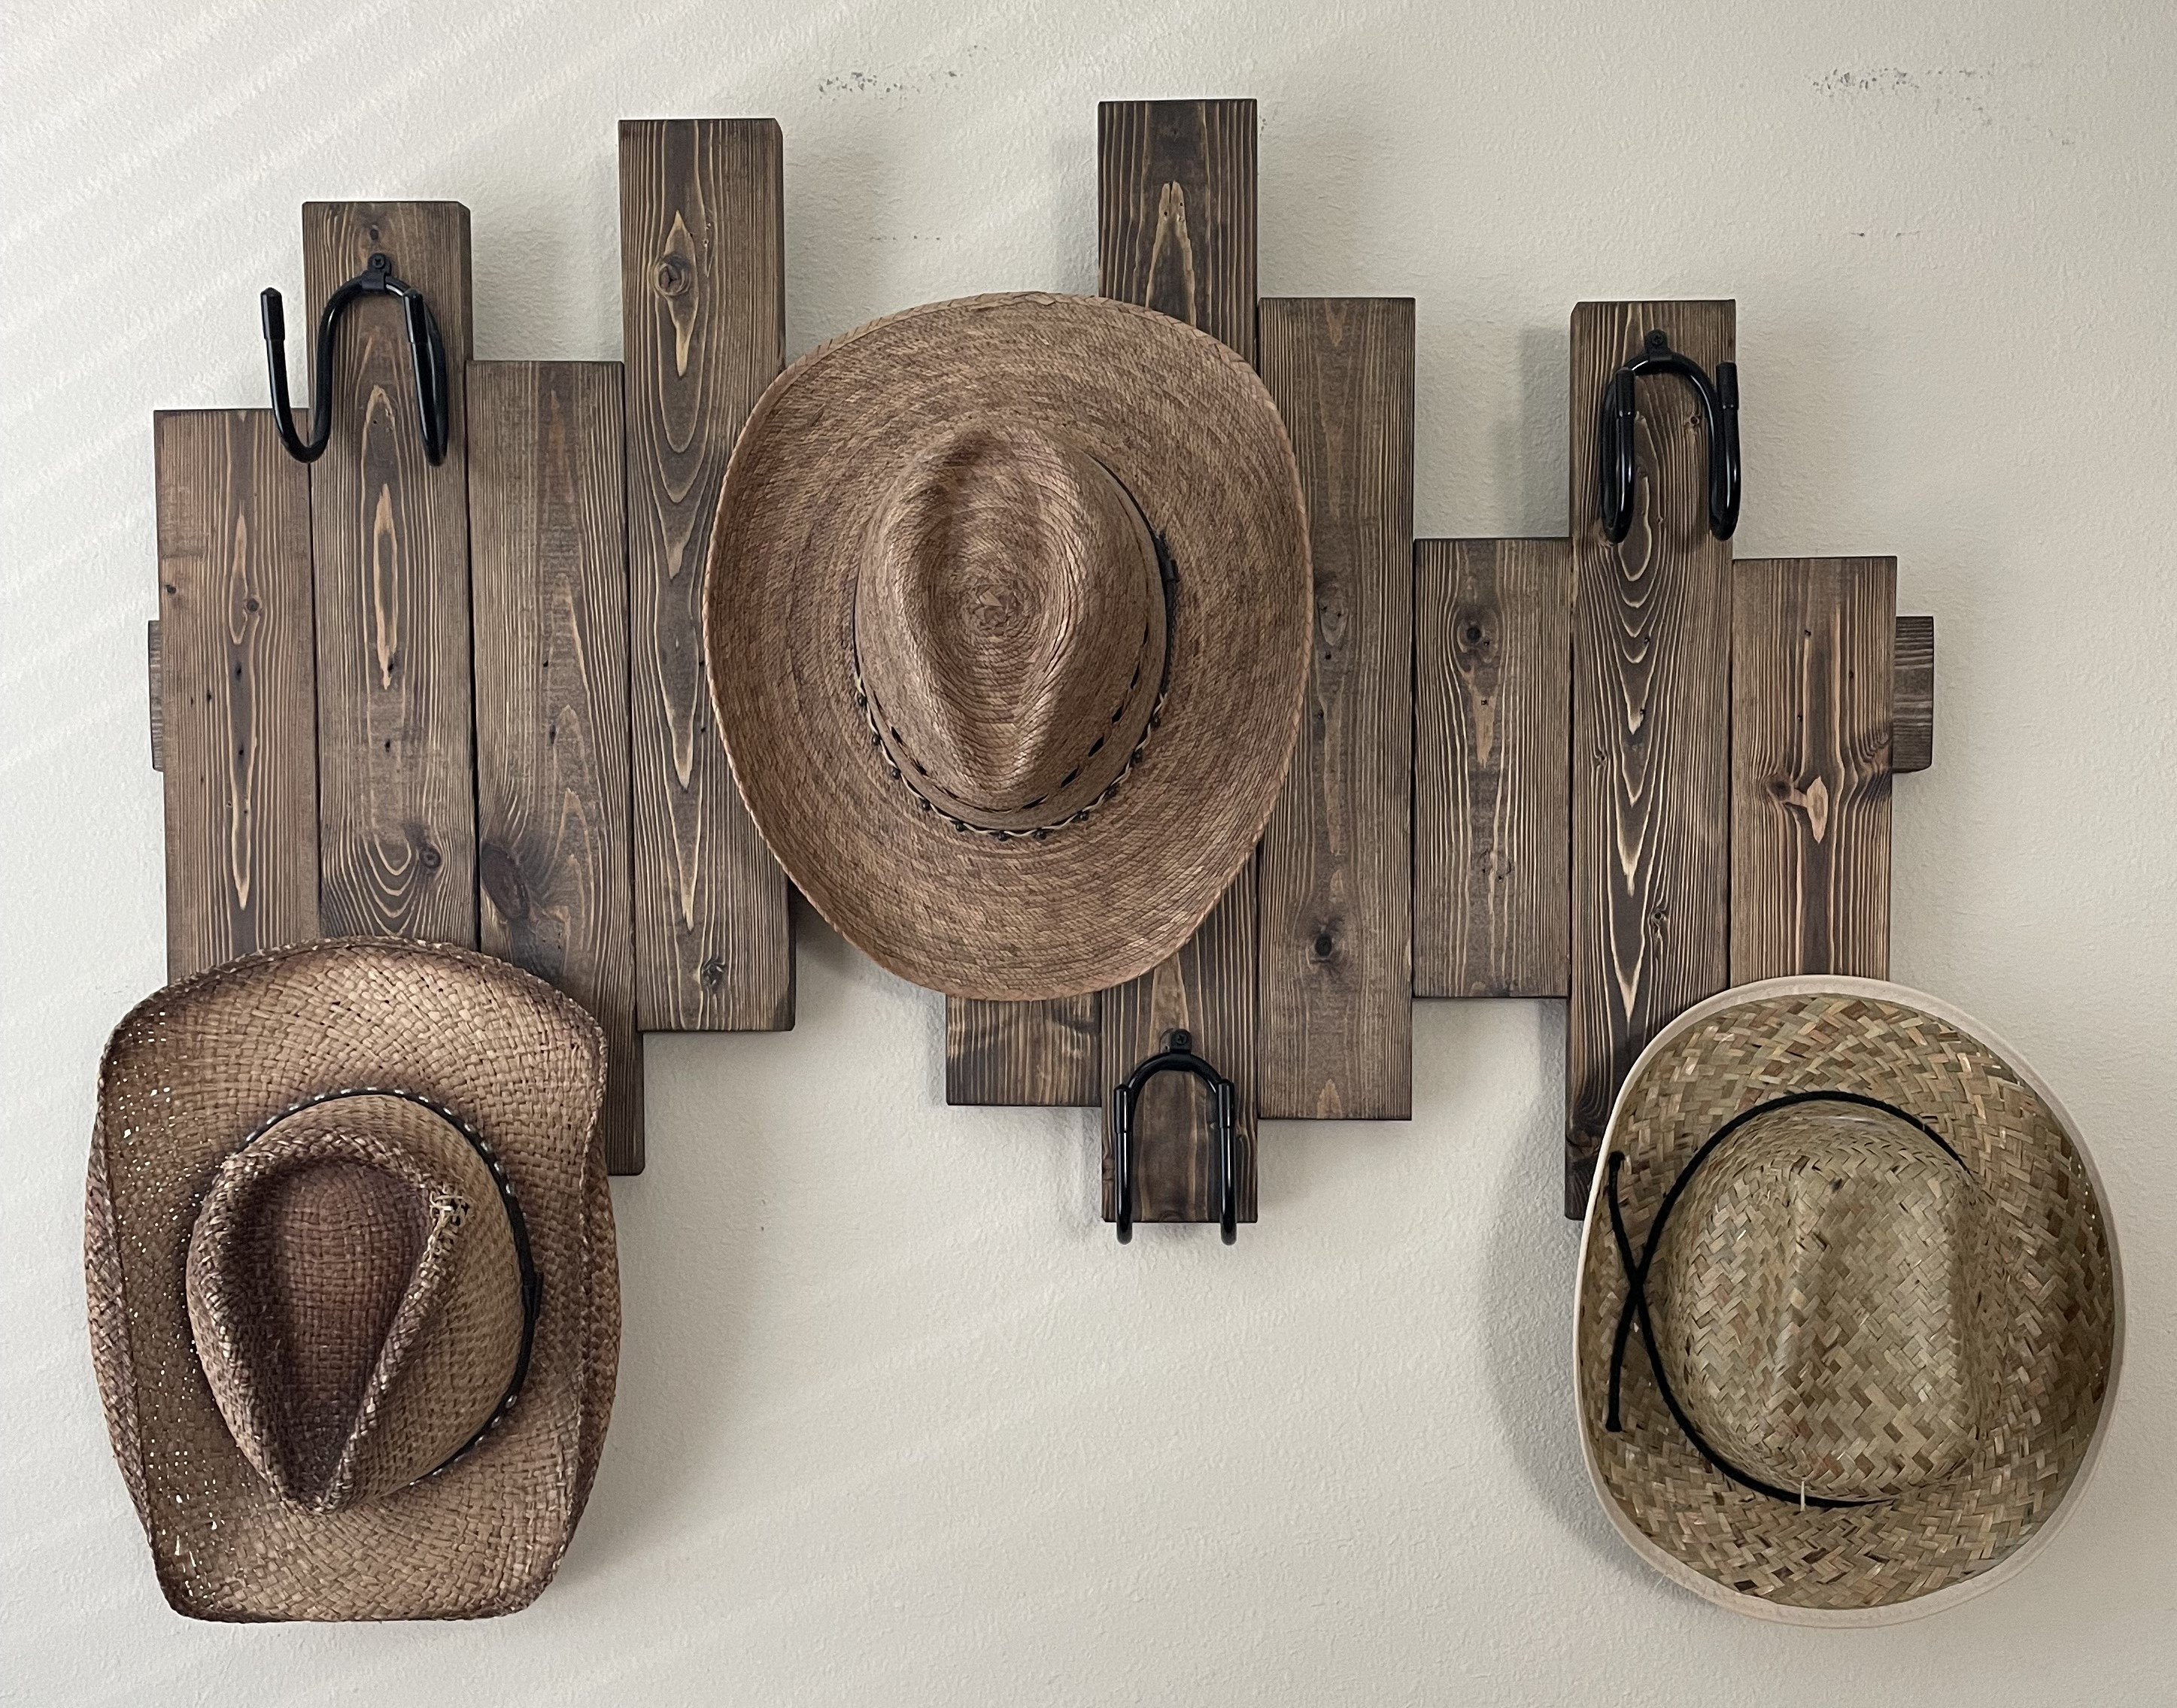 2xFolytiy Cowboy Hat Rack for Wall Hat Holder Organizer Western